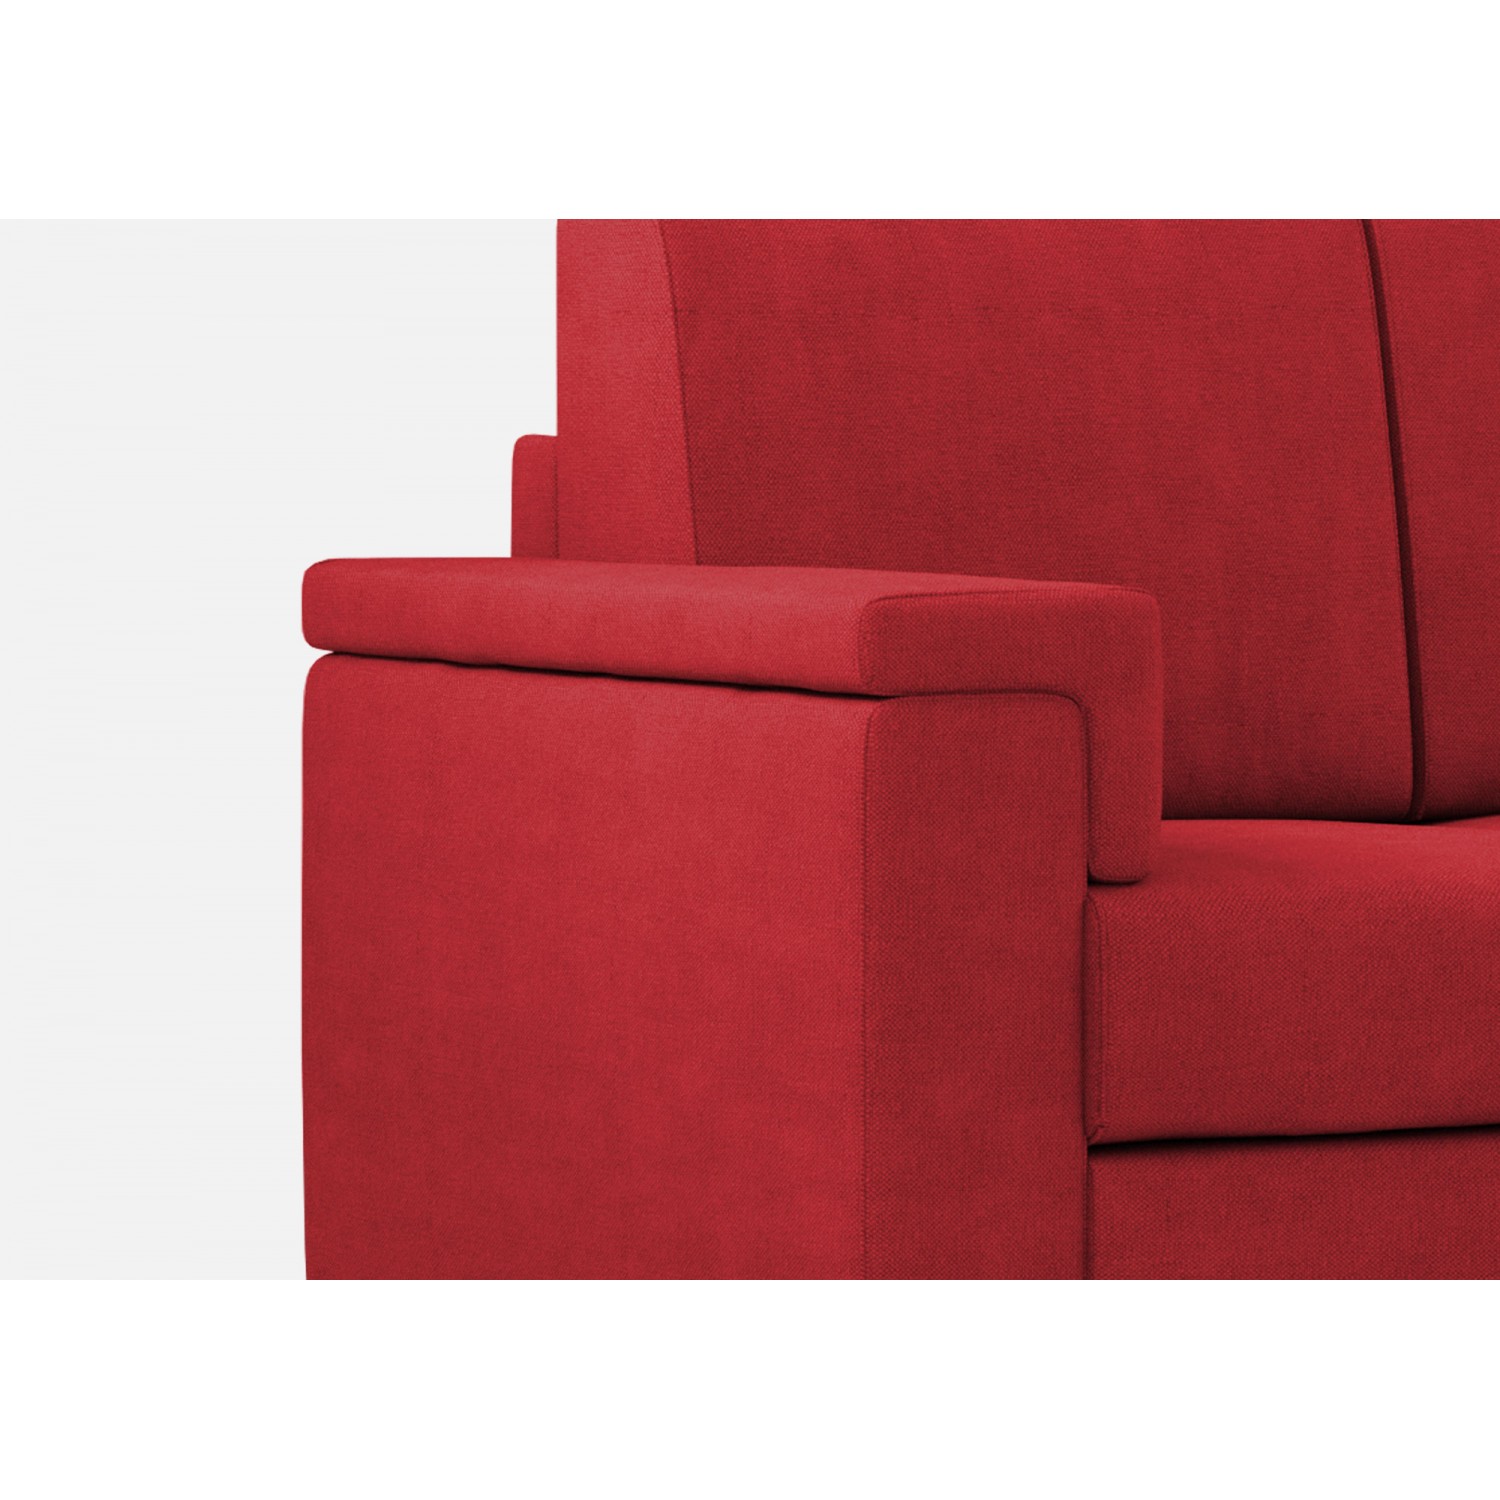 Ityhome Divano Marrak 2 posti (due sedute da 60cm) + pouf misure esterne L.148 P.155 colore rosso